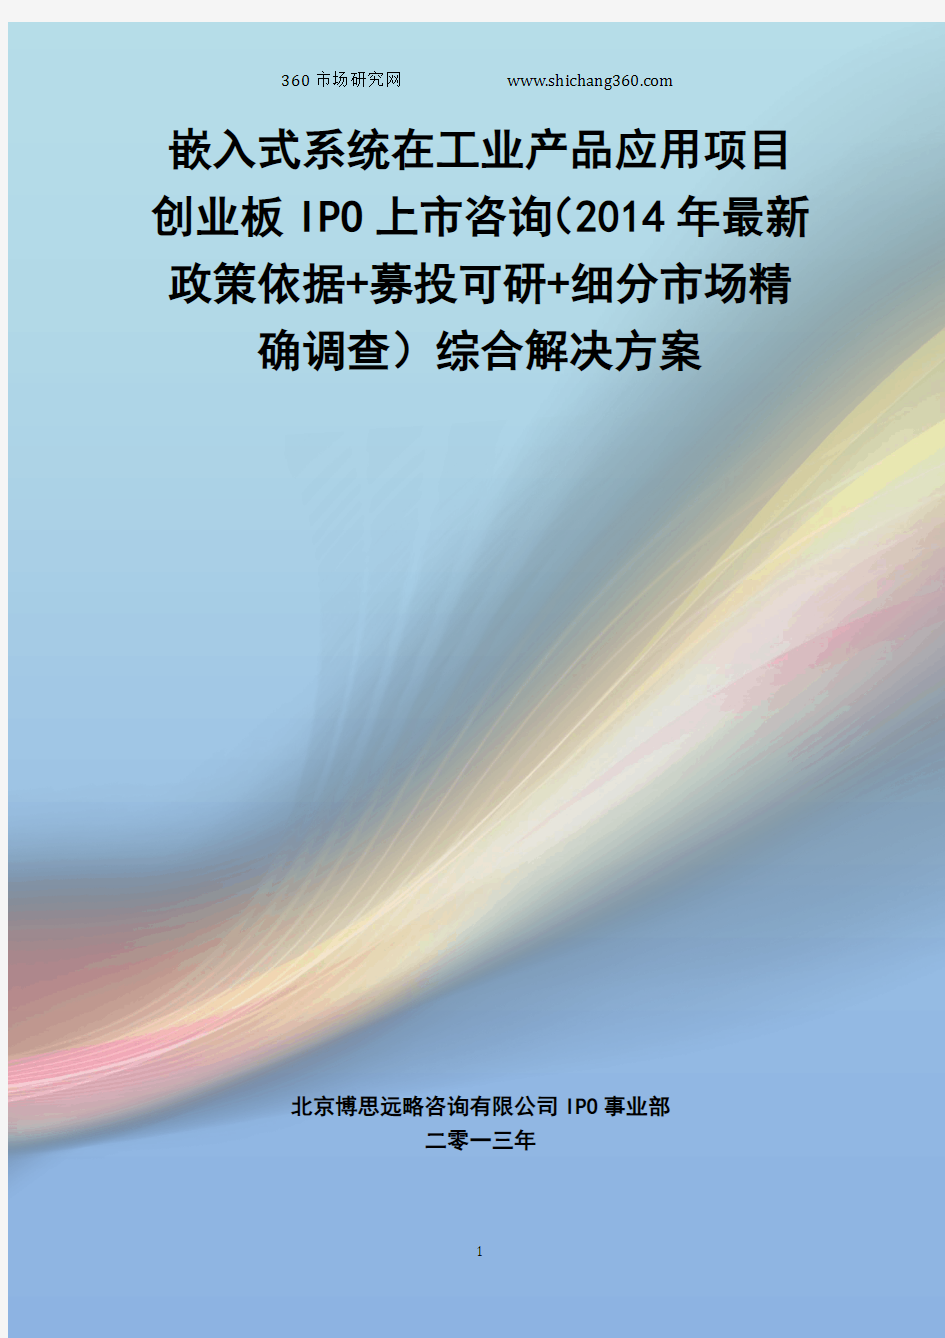 嵌入式系统在工业产品应用IPO上市咨询(2014年最新政策+募投可研+细分市场调查)综合解决方案